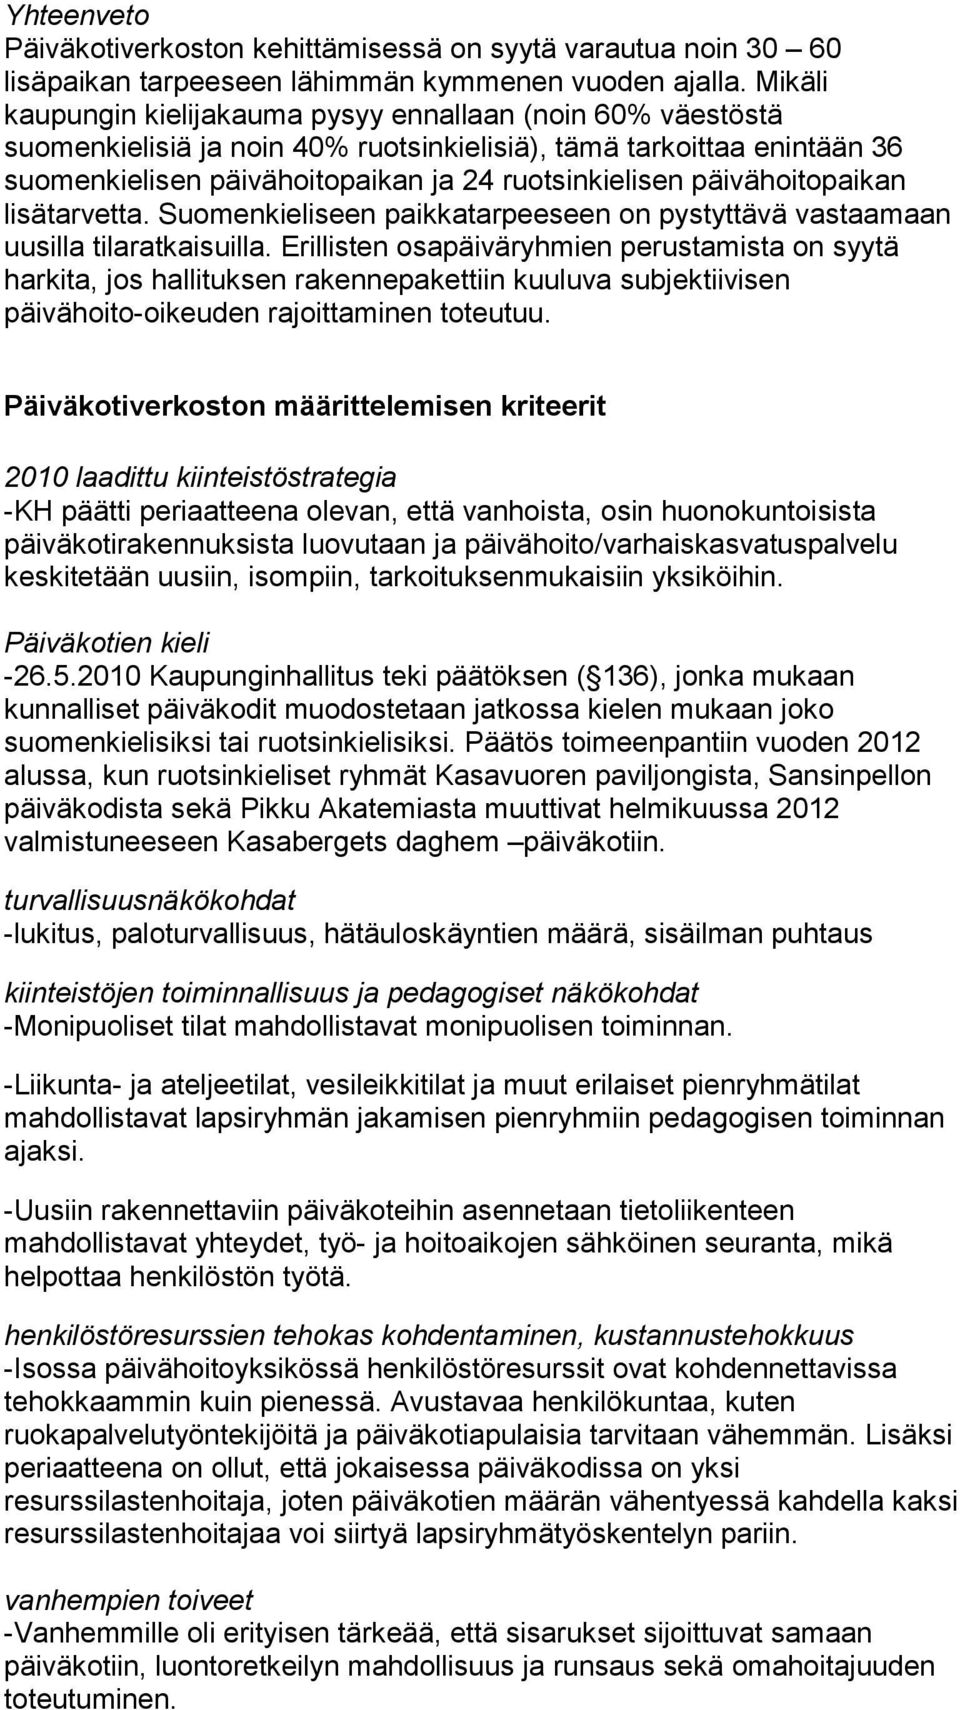 päivähoitopaikan lisätarvetta. Suomenkieliseen paikkatarpeeseen on pystyttävä vastaamaan uusilla tilaratkaisuilla.